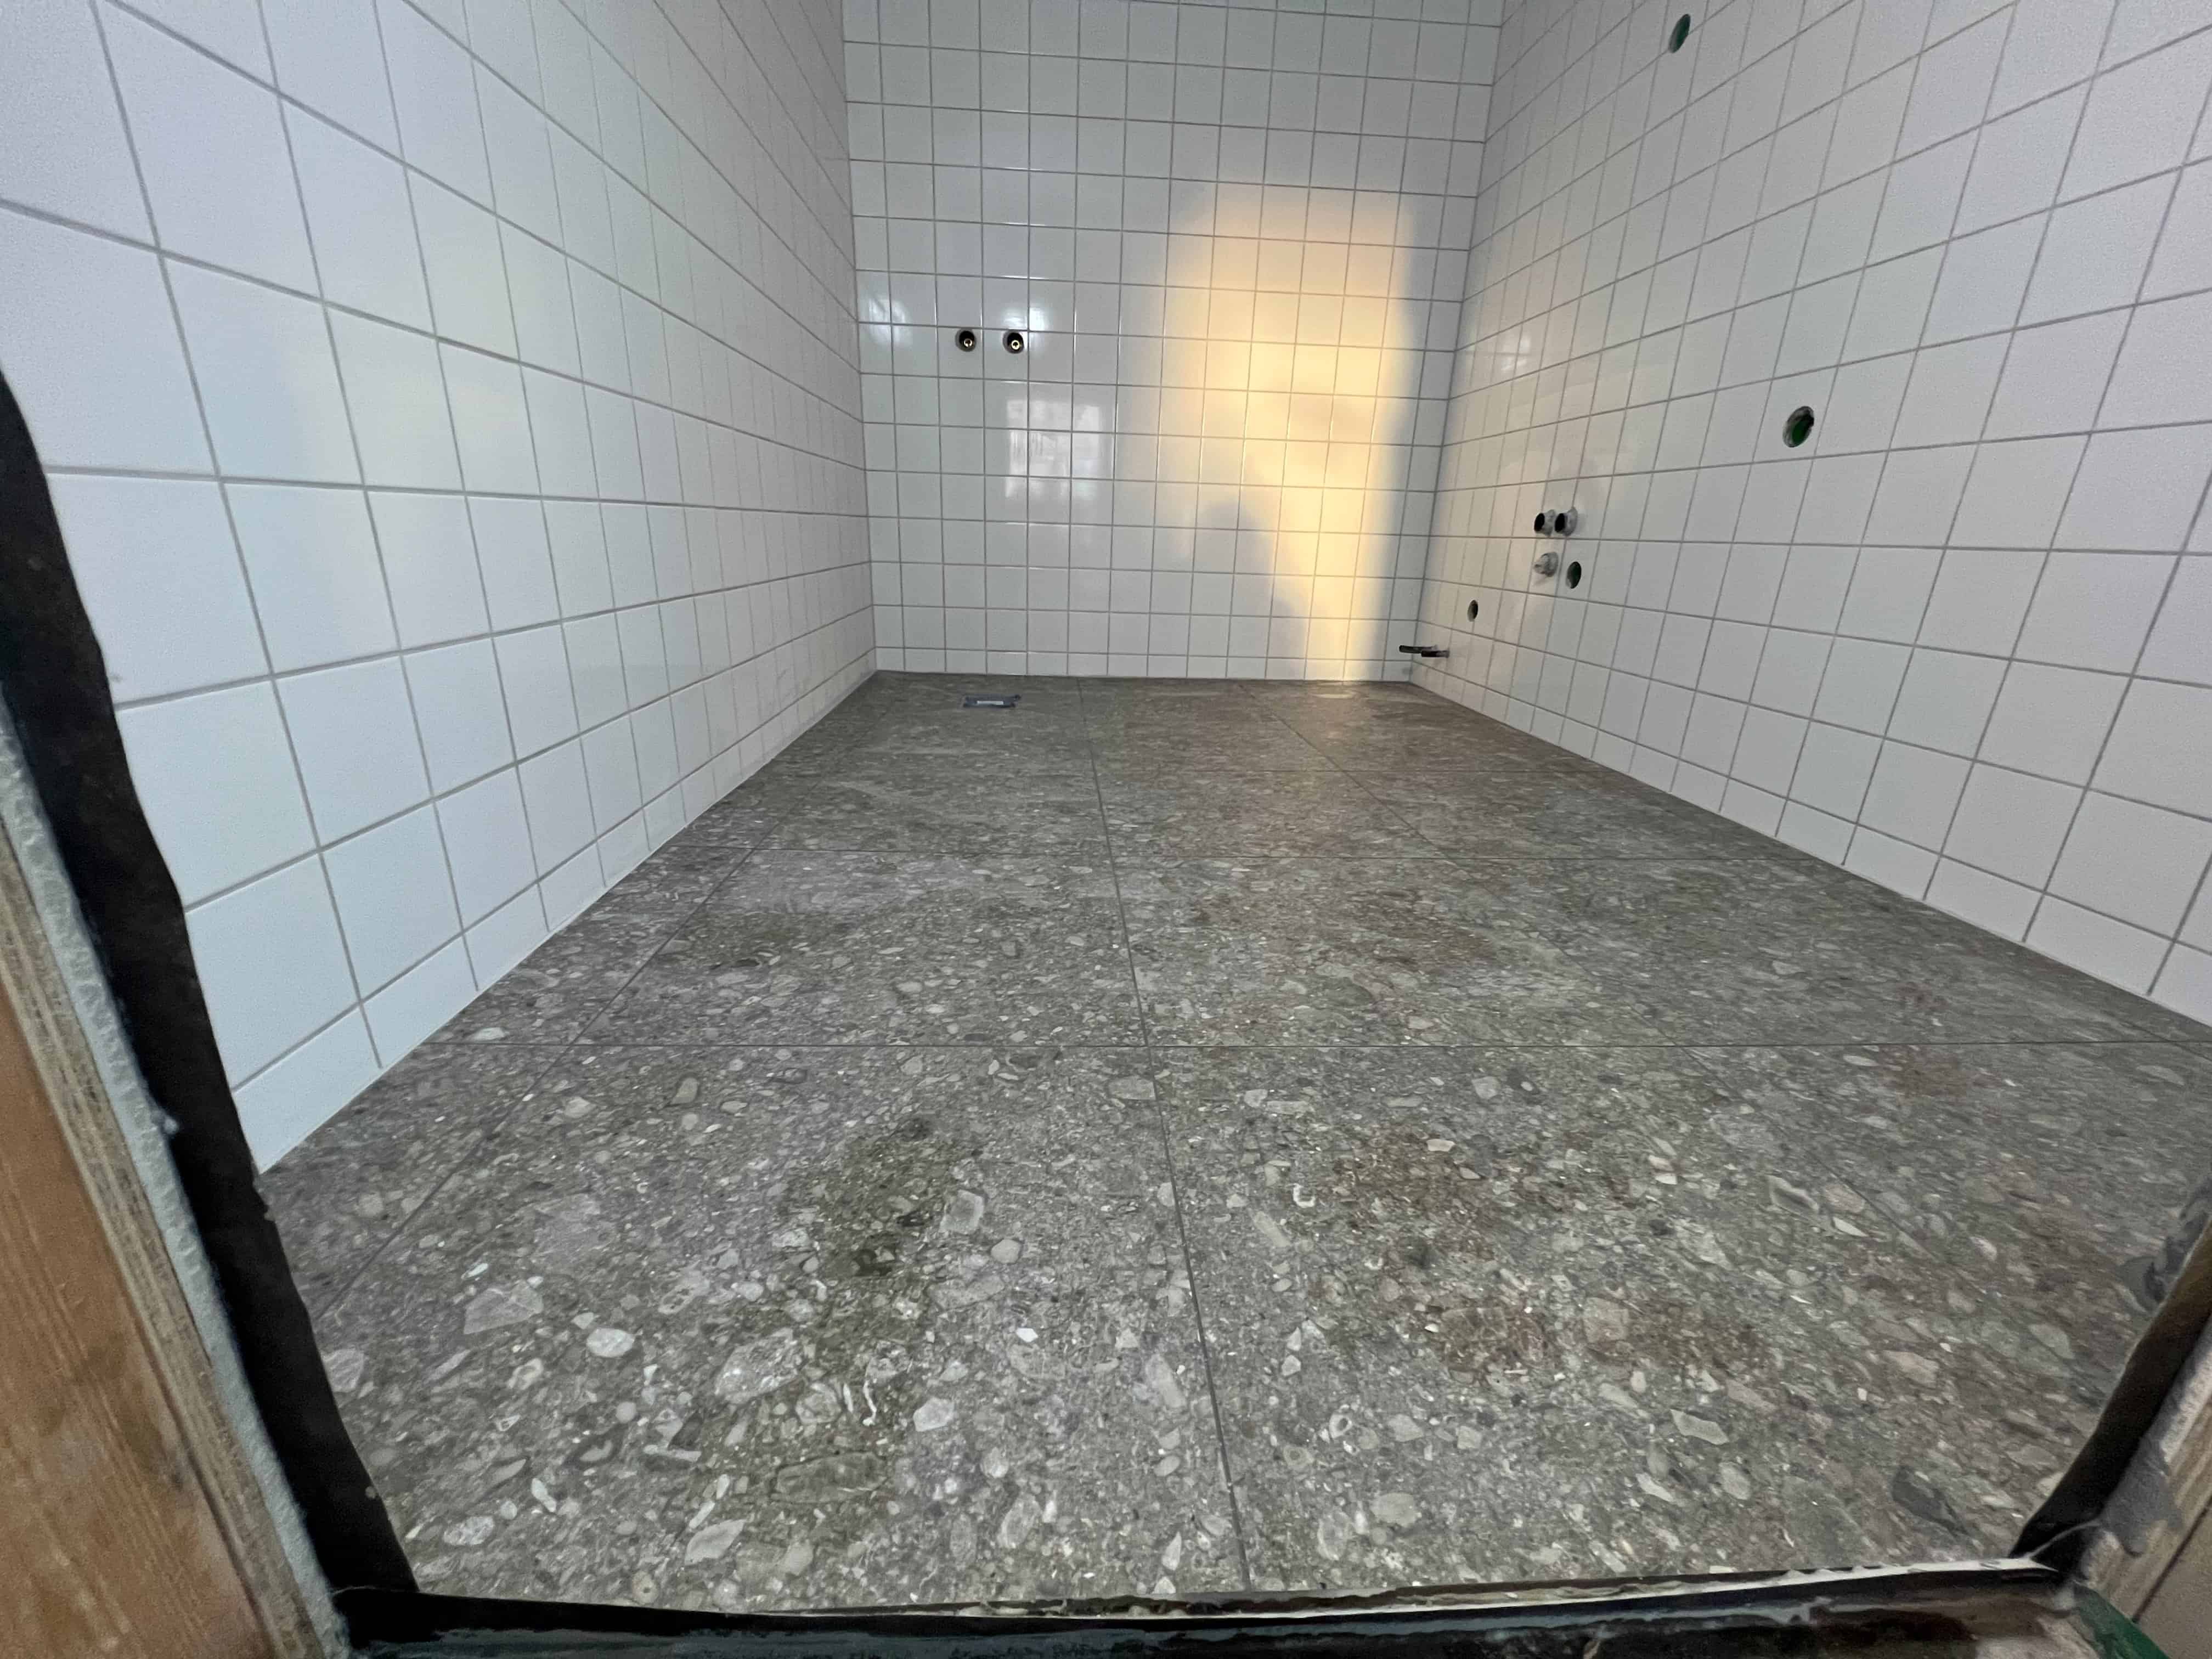 Referensjobb "Pågående badrumsrenovering - Kakel och klinkers" utfört av ENNE79 Bygg AB